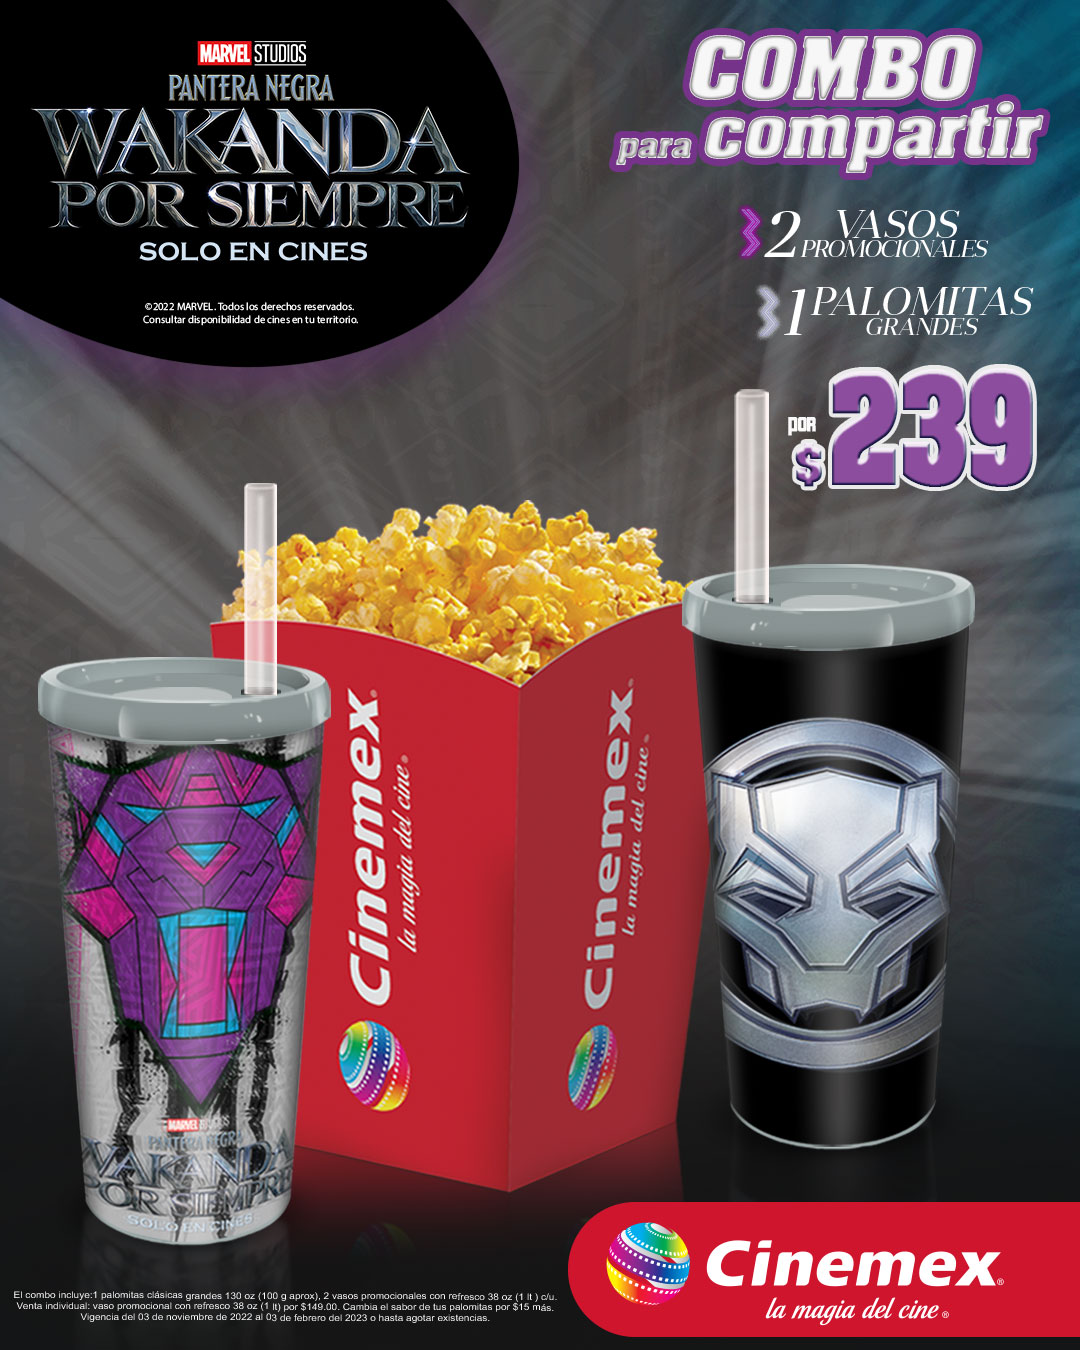 Combos Cinemex con vasos y palomera de Wakanda por Siempre por $239